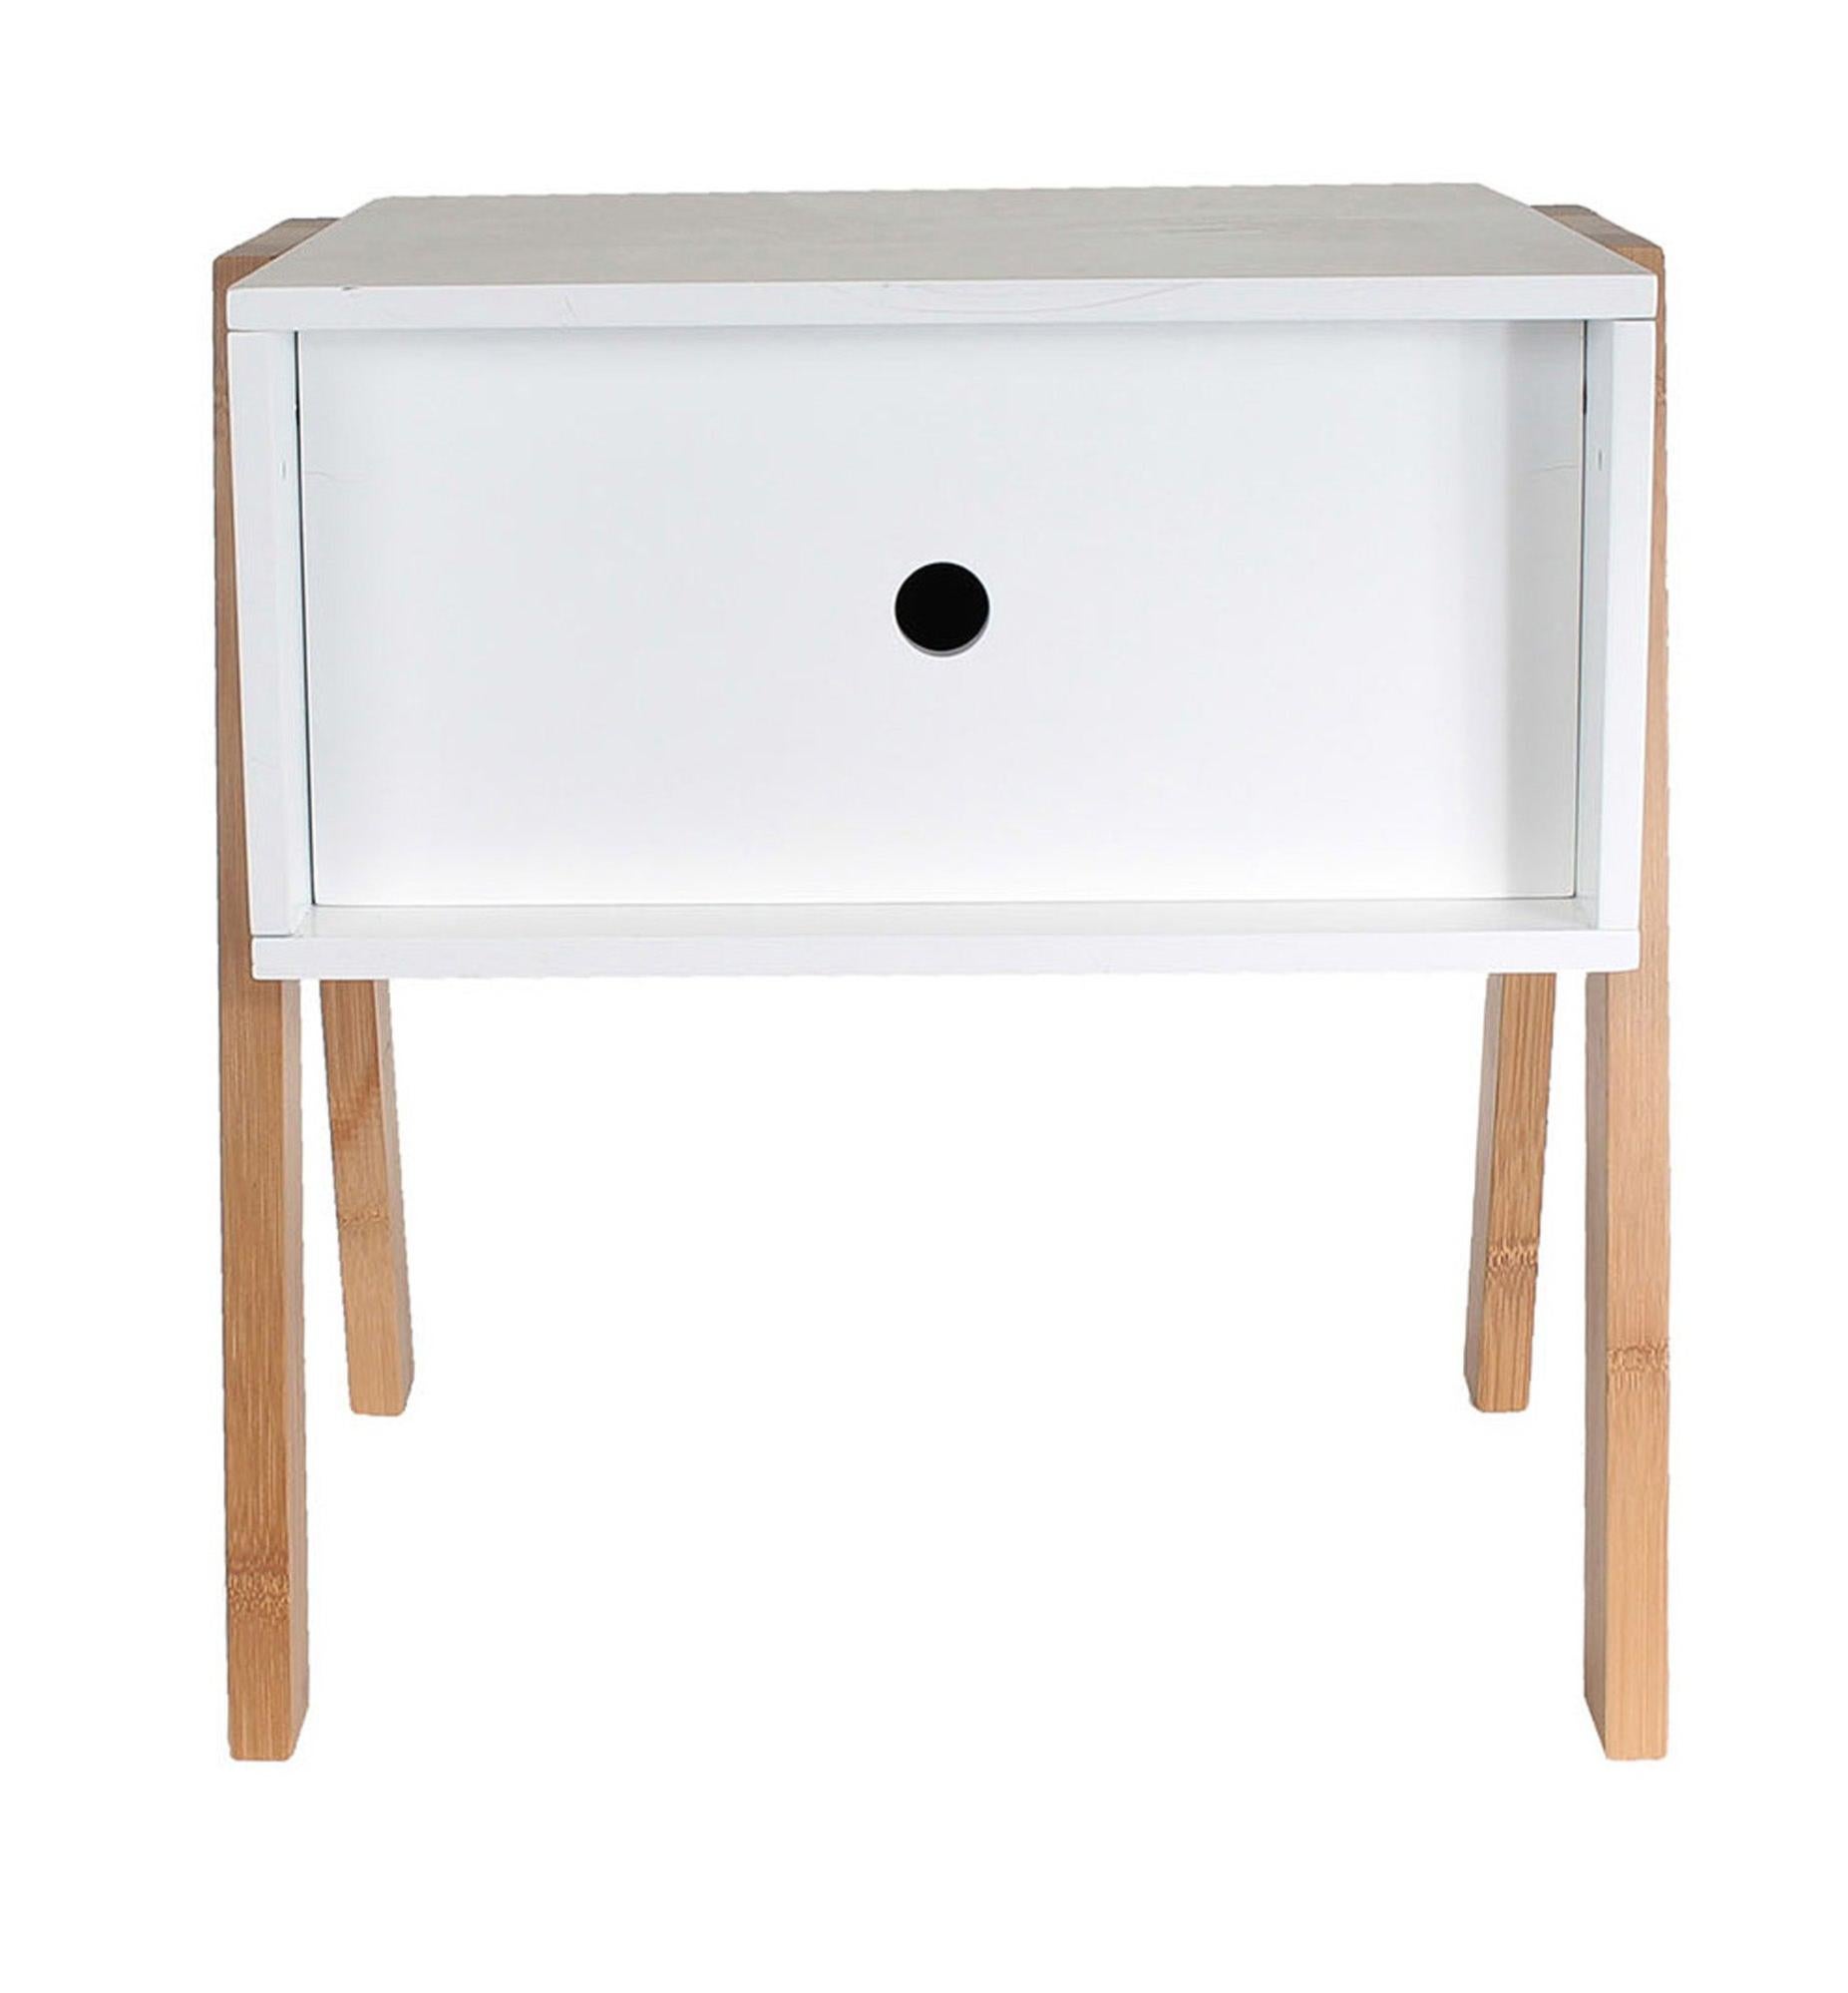 Cajonera kit adhara de madera color blanco con un cajón de 45,3x35x44cm